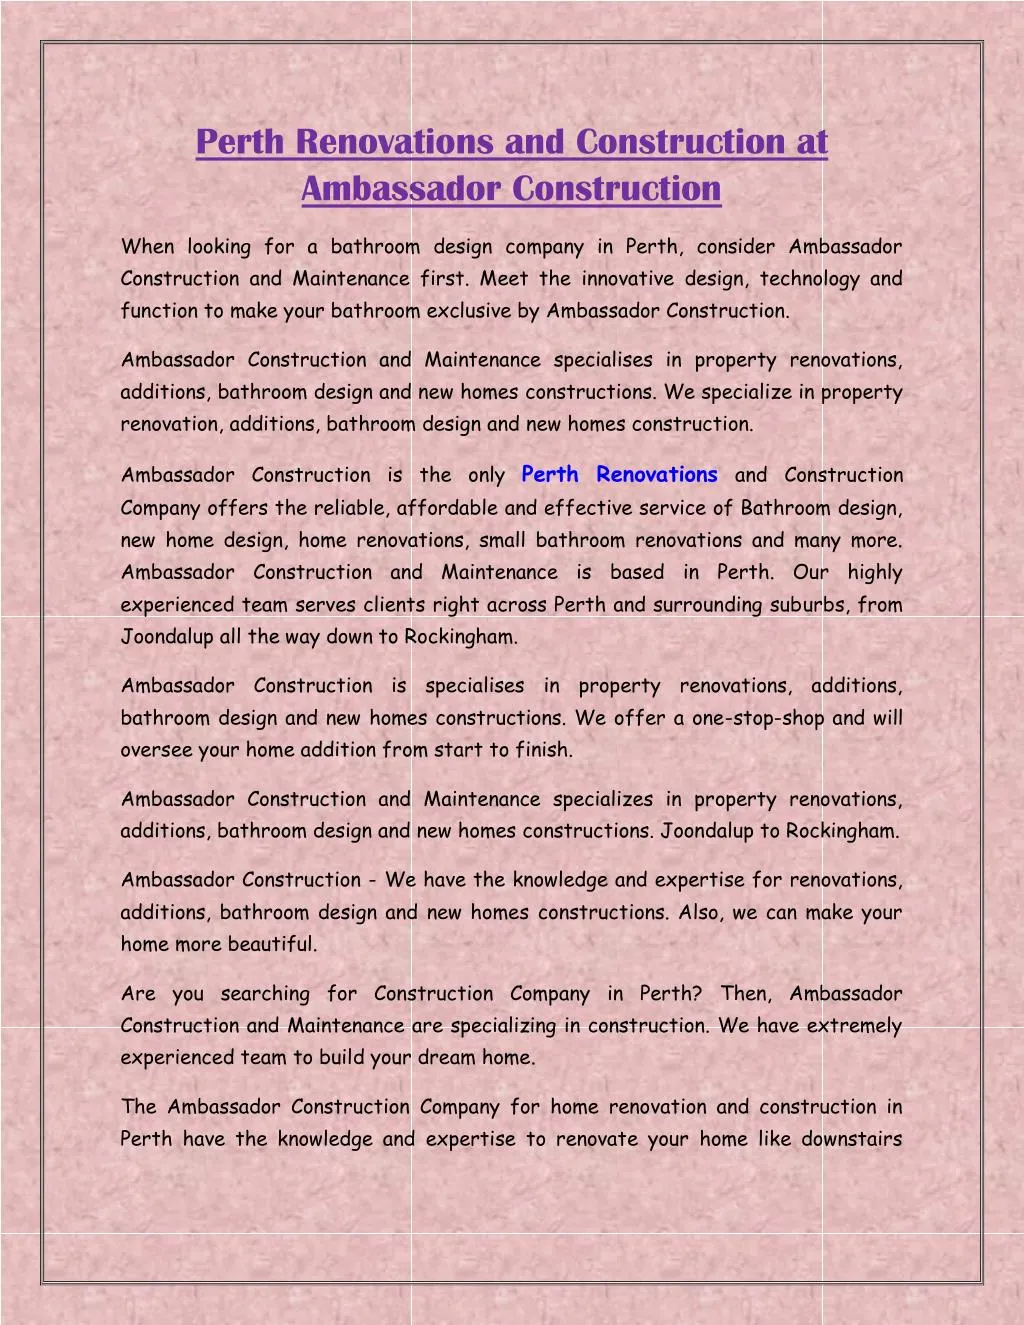 perth renovations and construction at ambassador